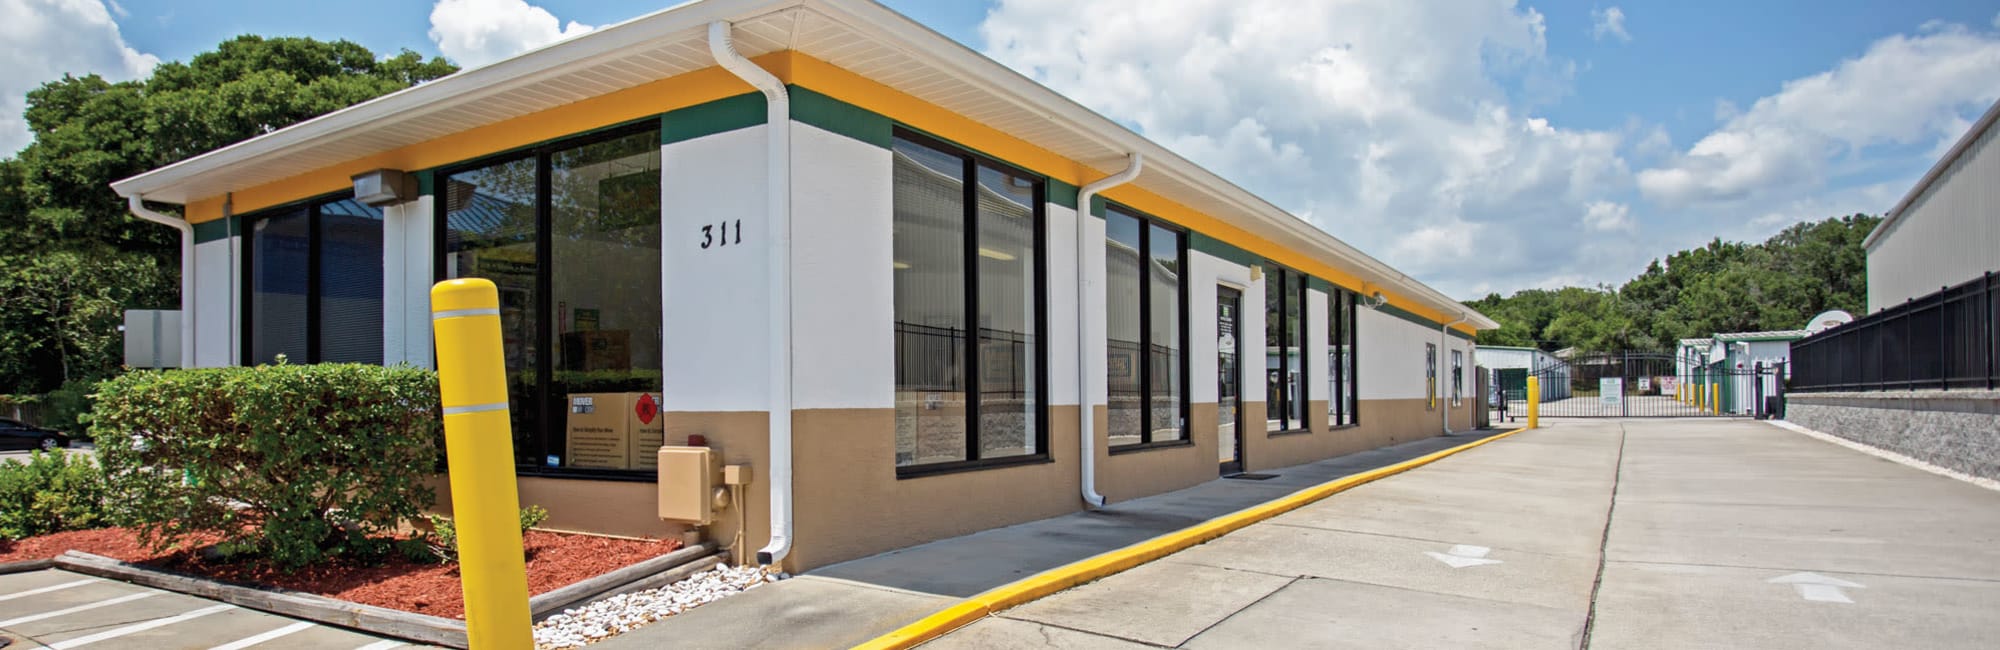 Storage Units in Seffner, FL 33584 | Metro Self Storage